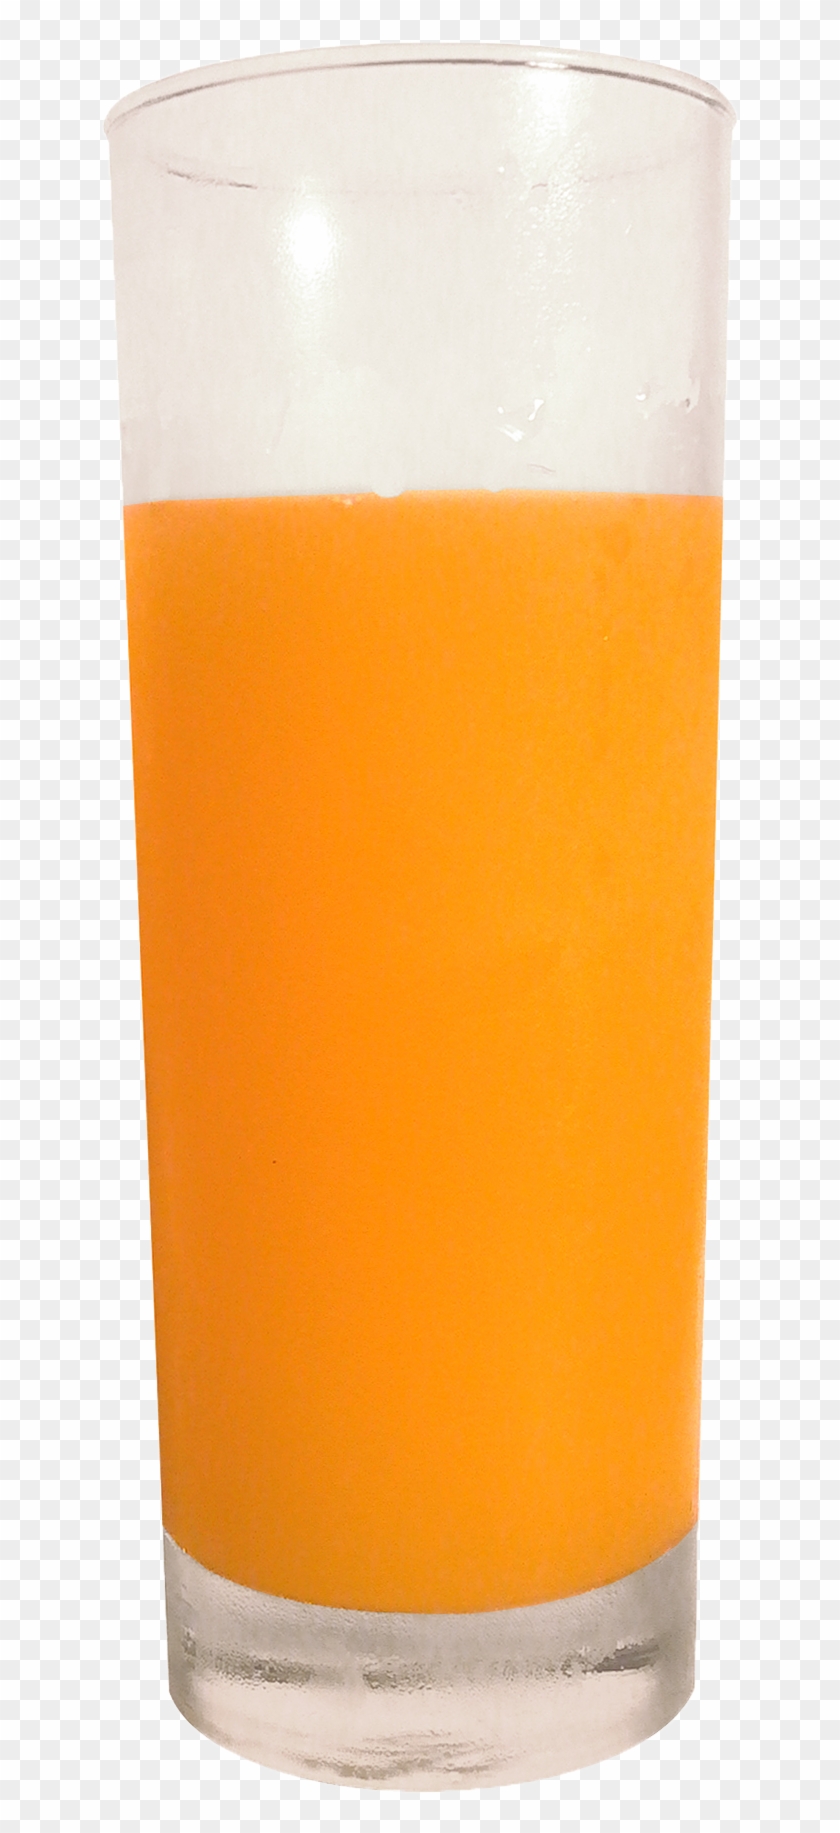 Orange Juice Tomato Juice Soft Drink Harvey Wallbanger - Orangejuice Glass #1117953